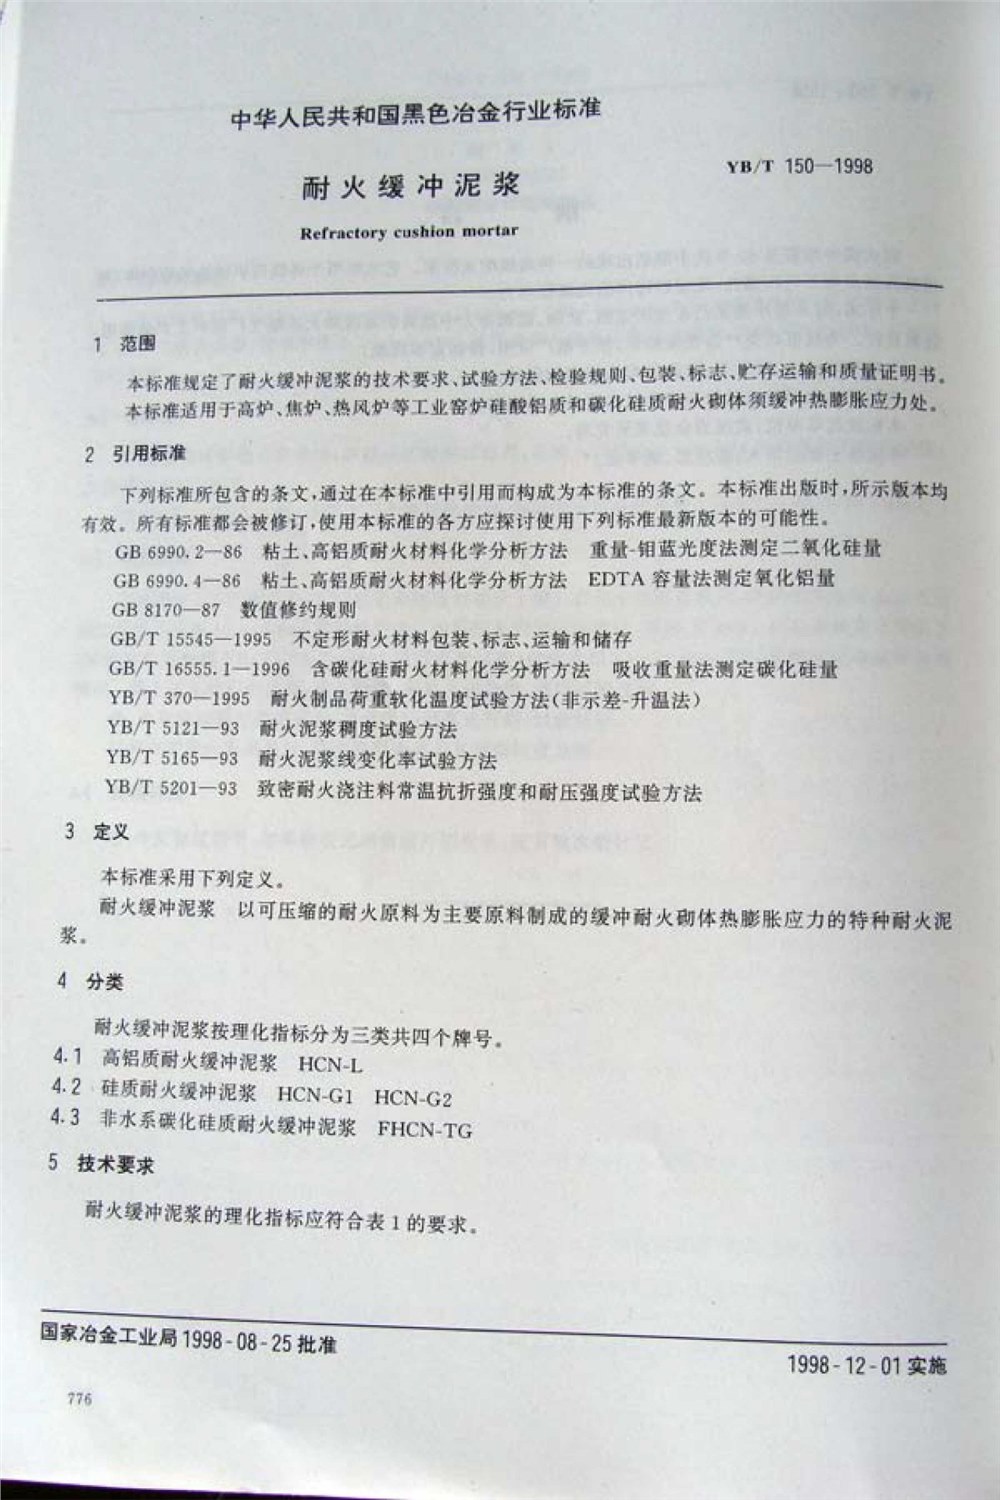 杏宇缓冲泥浆行业标准 YB/T 150-1998